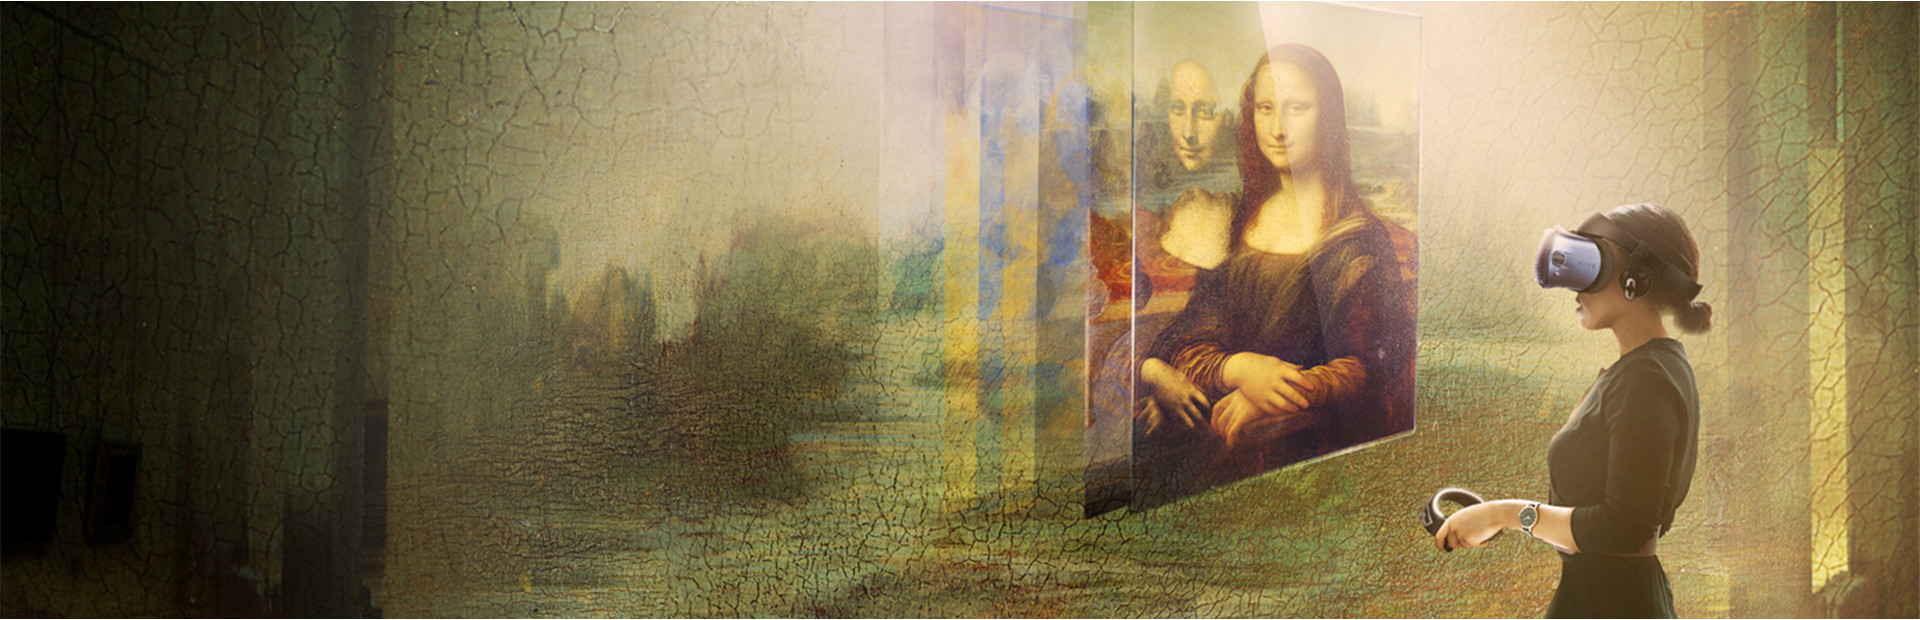 Mona Lisa: Beyond The Glass cover image